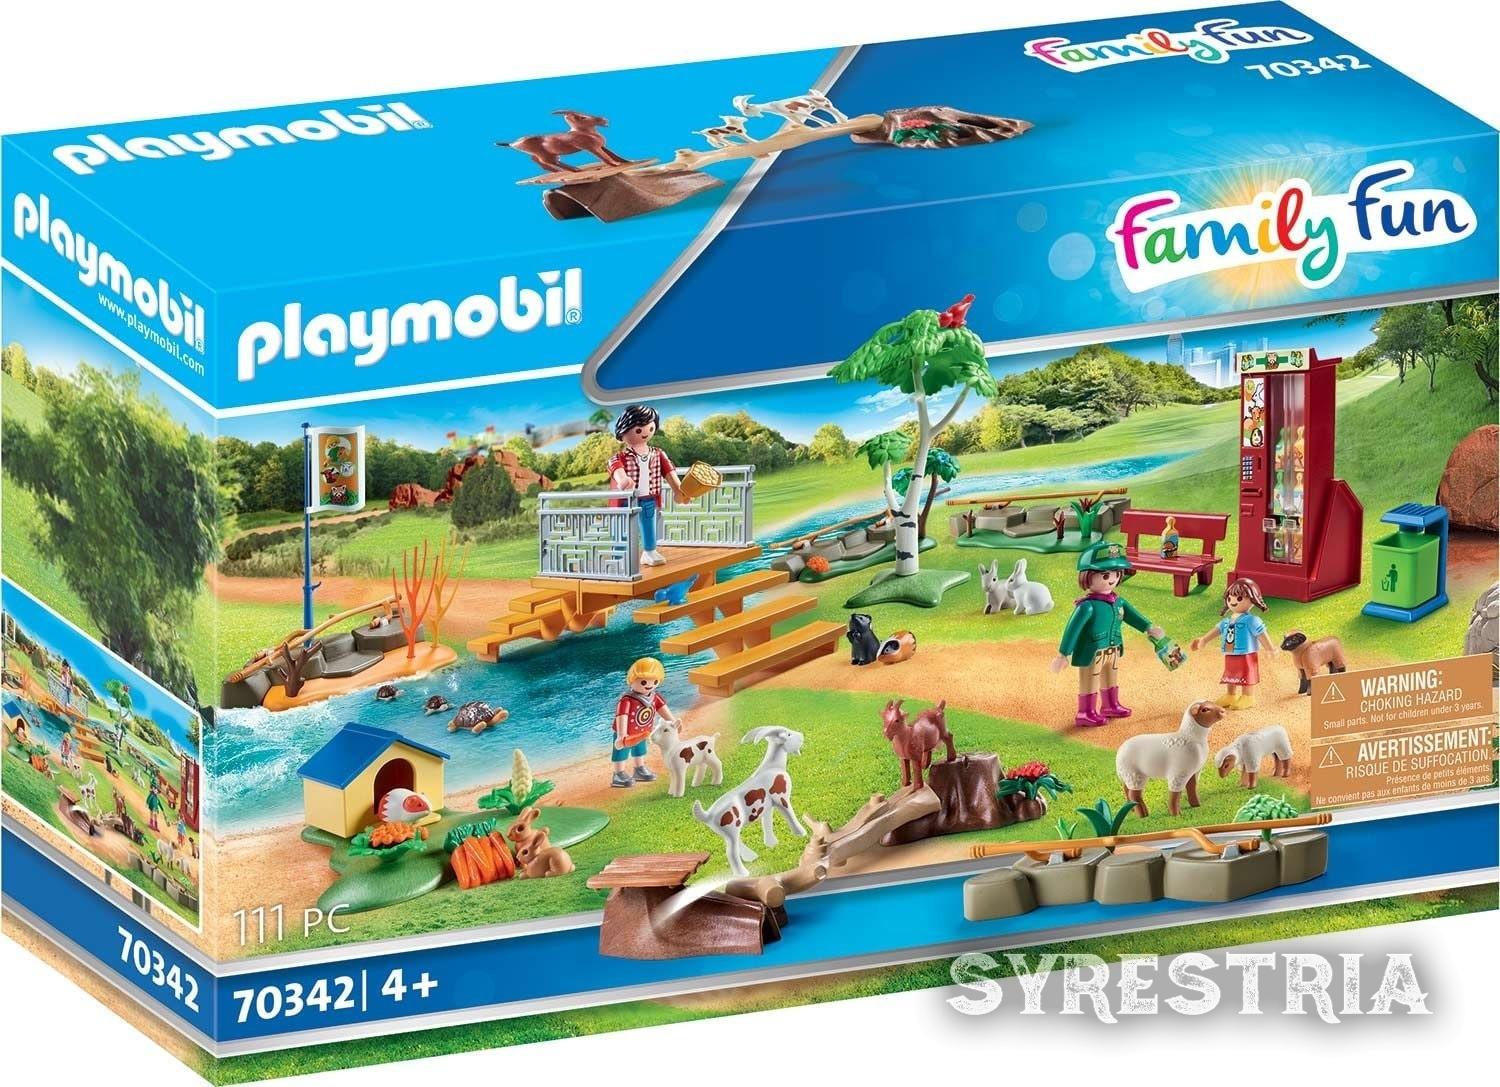 Playmobil Family Fun - Erlebnis-Streichelzoo 70342